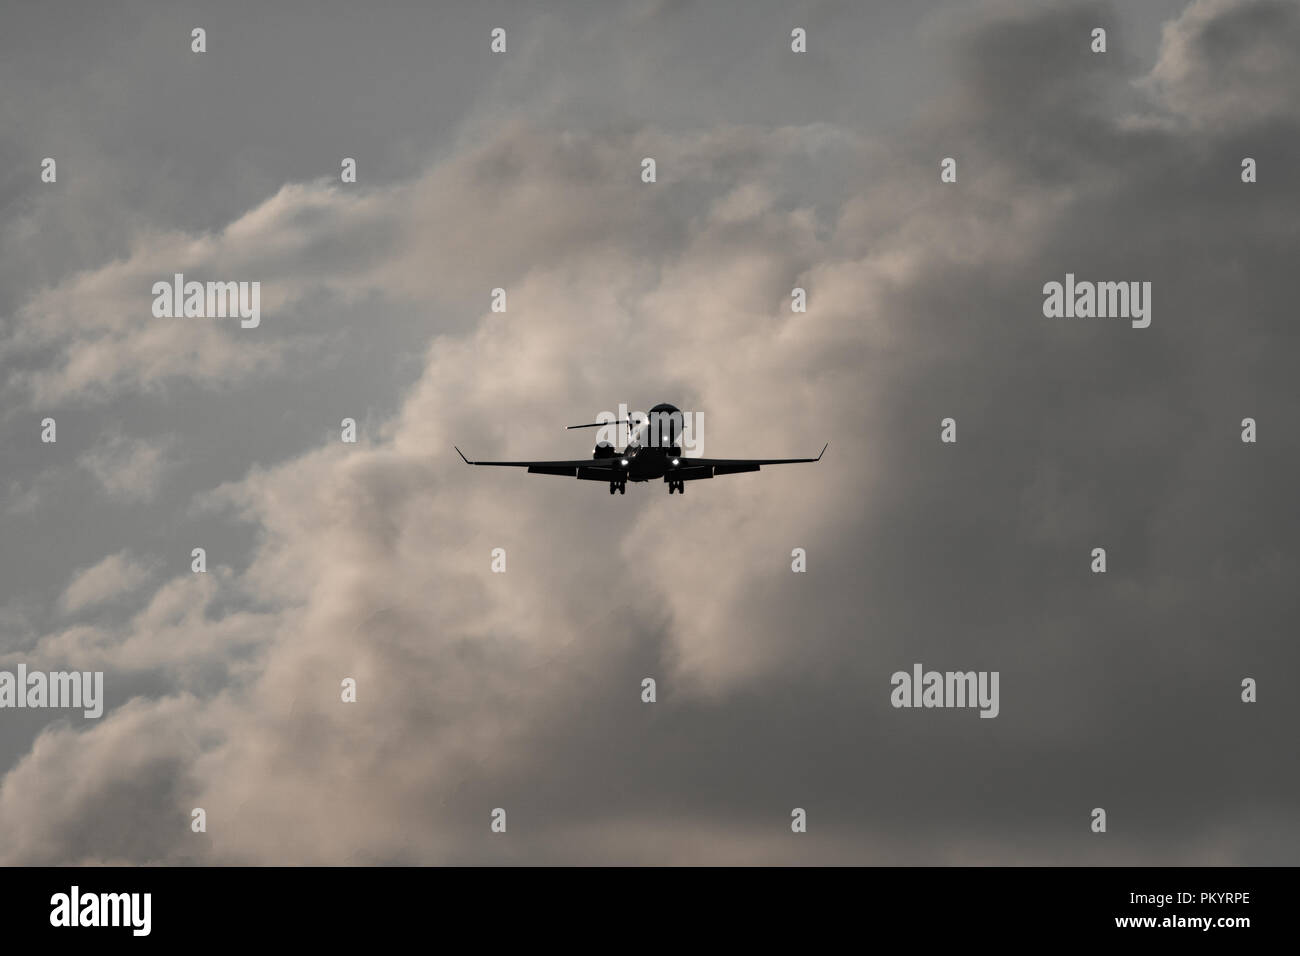 Alto contraste de avión de reacción contra las nubes Foto de stock